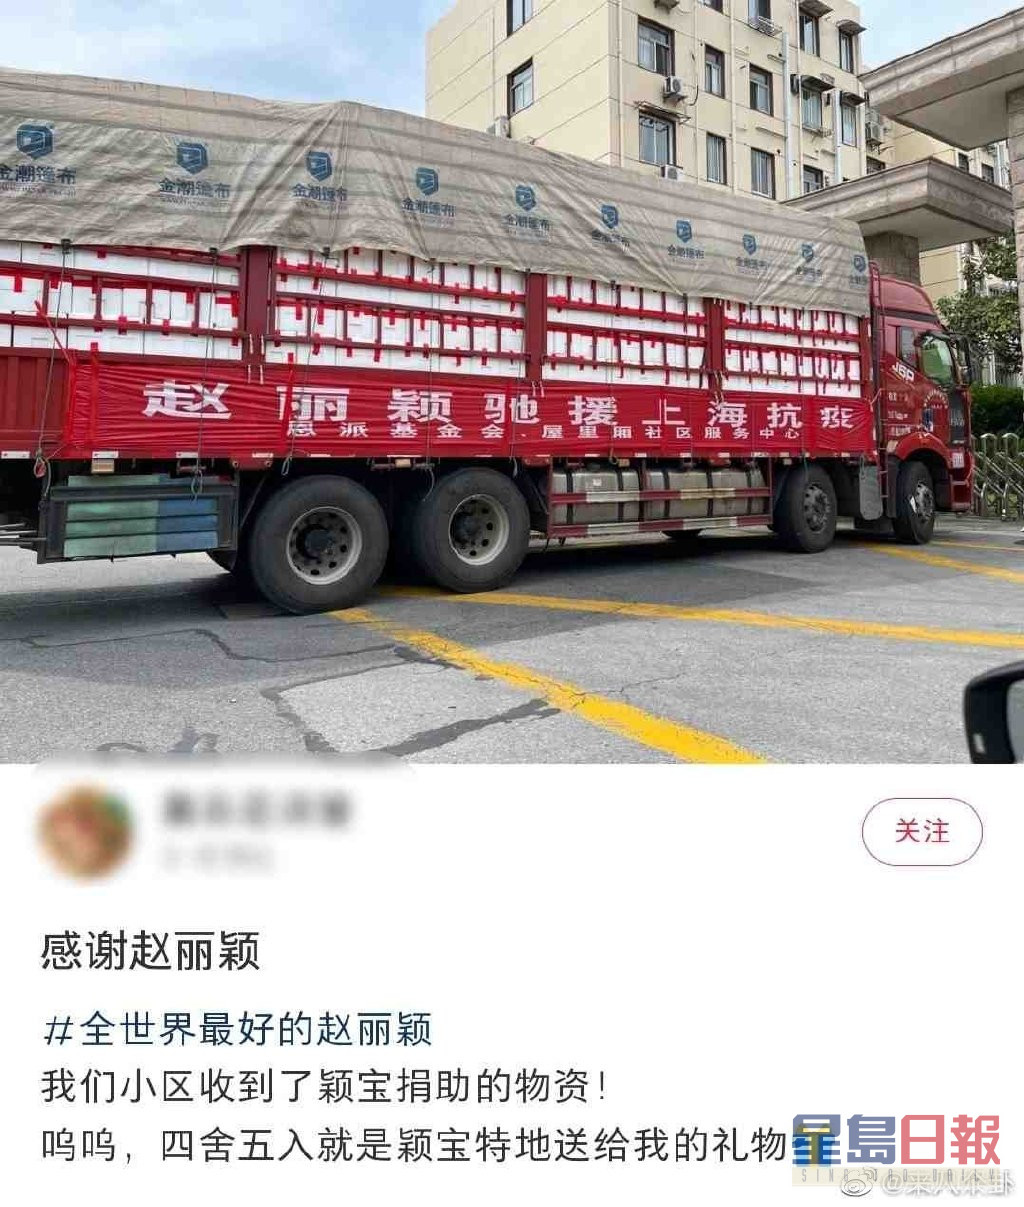 有上海民眾於網上分享已收到趙麗穎所捐的物資。